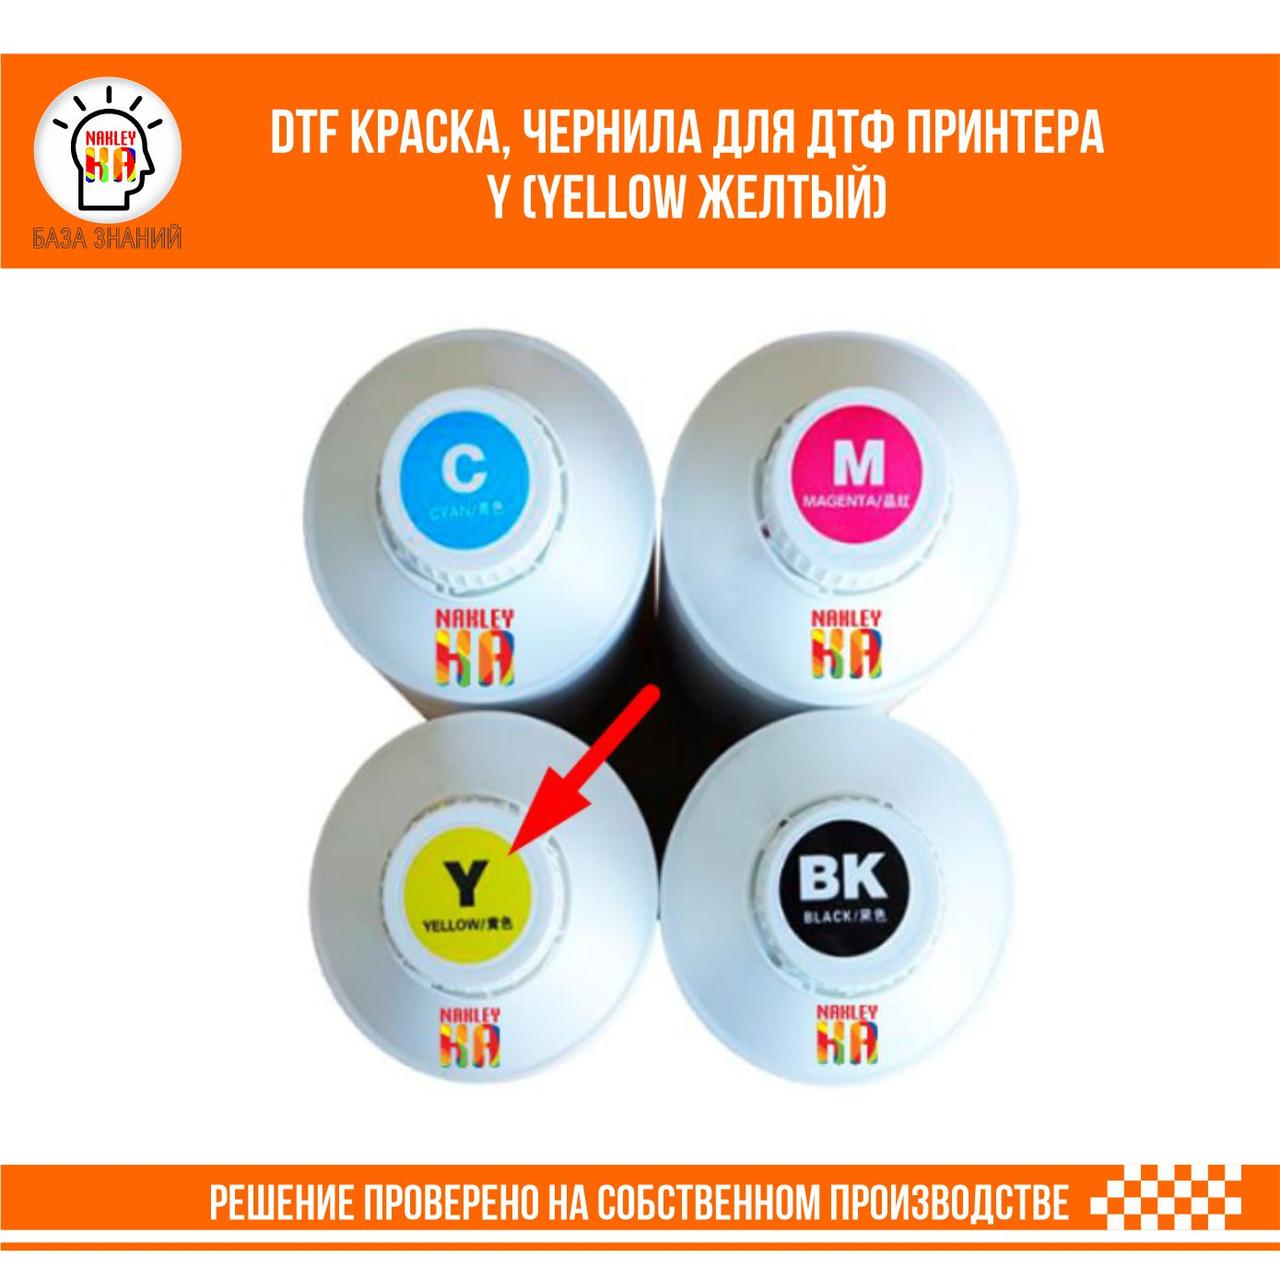 DTF краска, чернила для ДТФ принтера Y (Yellow Желтый)